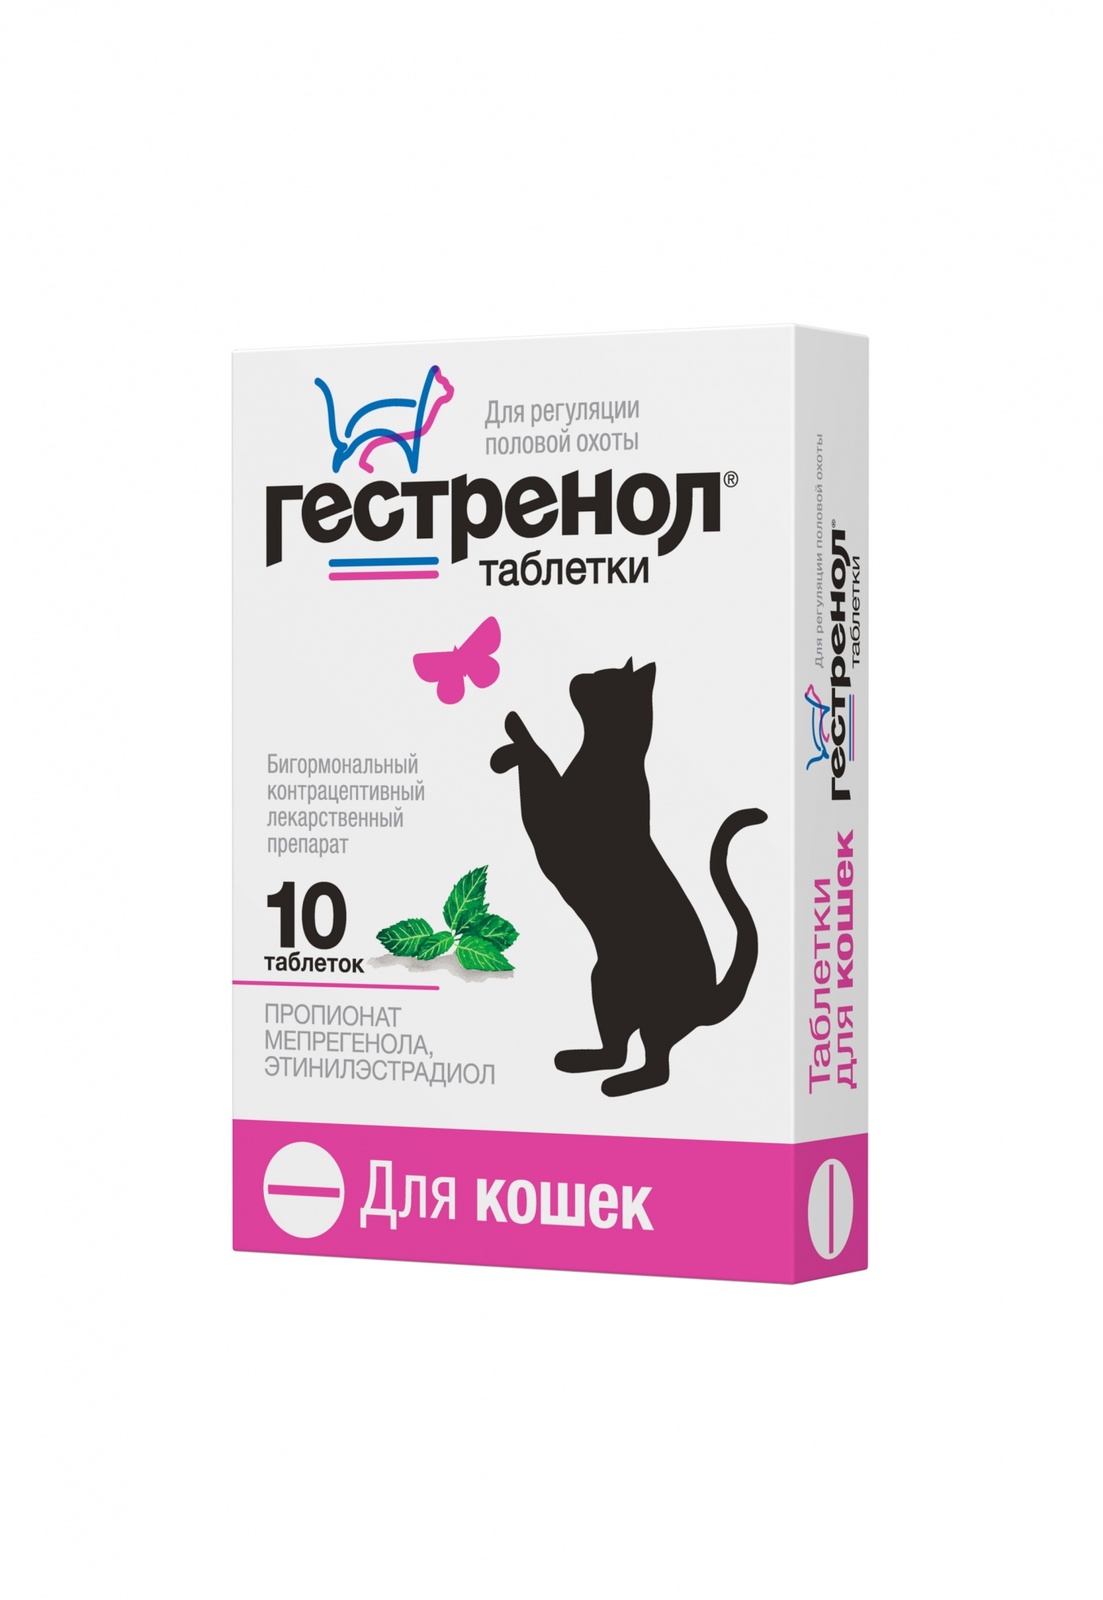 Астрафарм Астрафарм гестренол таблетки для кошек для регуляции половой охоты, 10 таб. (7 г)